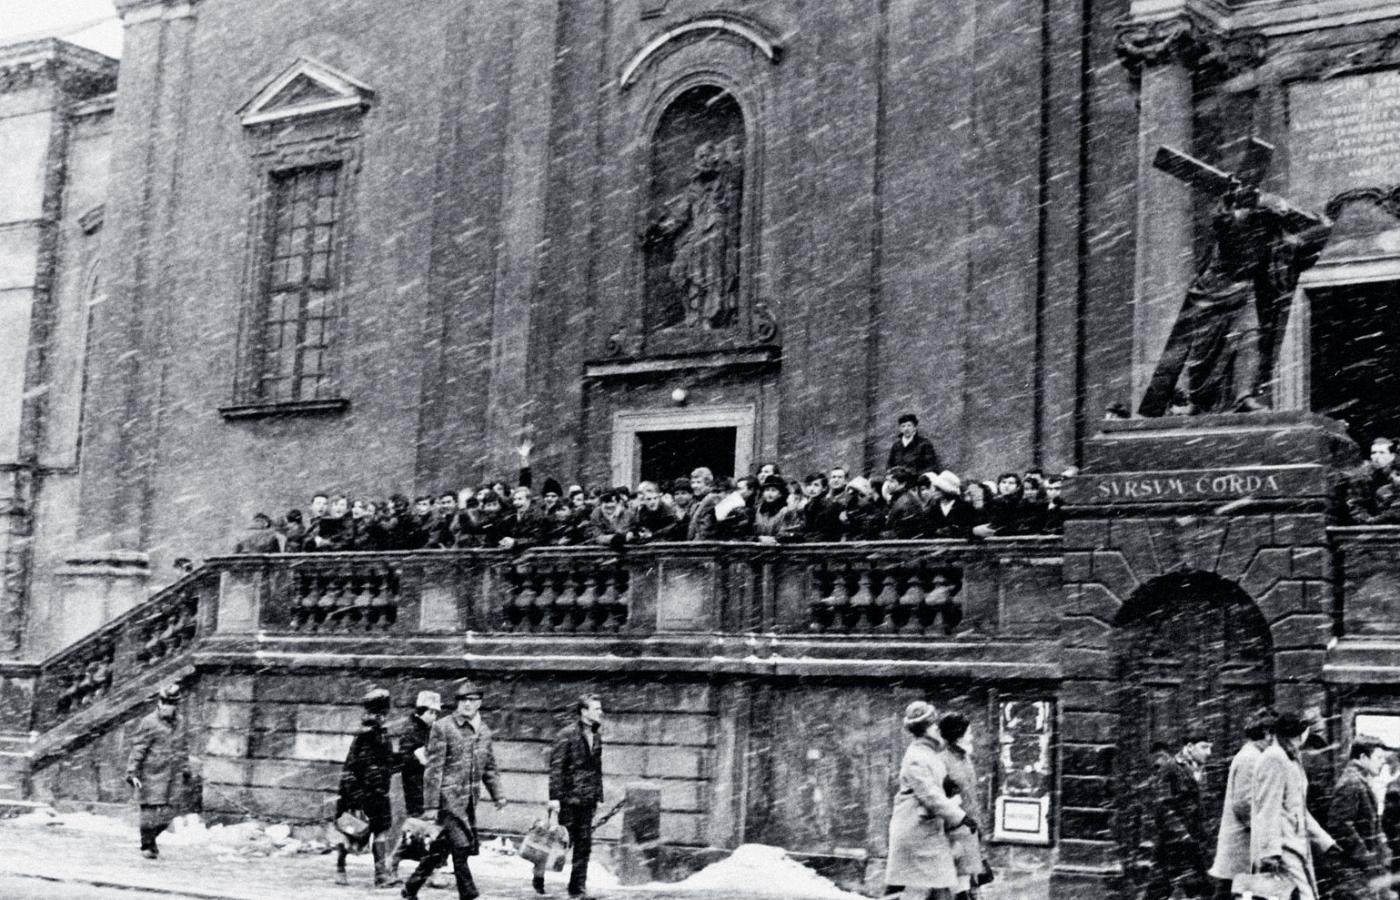 Pod kościołem św. Krzyża, naprzeciwko Uniwersytetu Warszawskiego, 8 marca 1968 r.